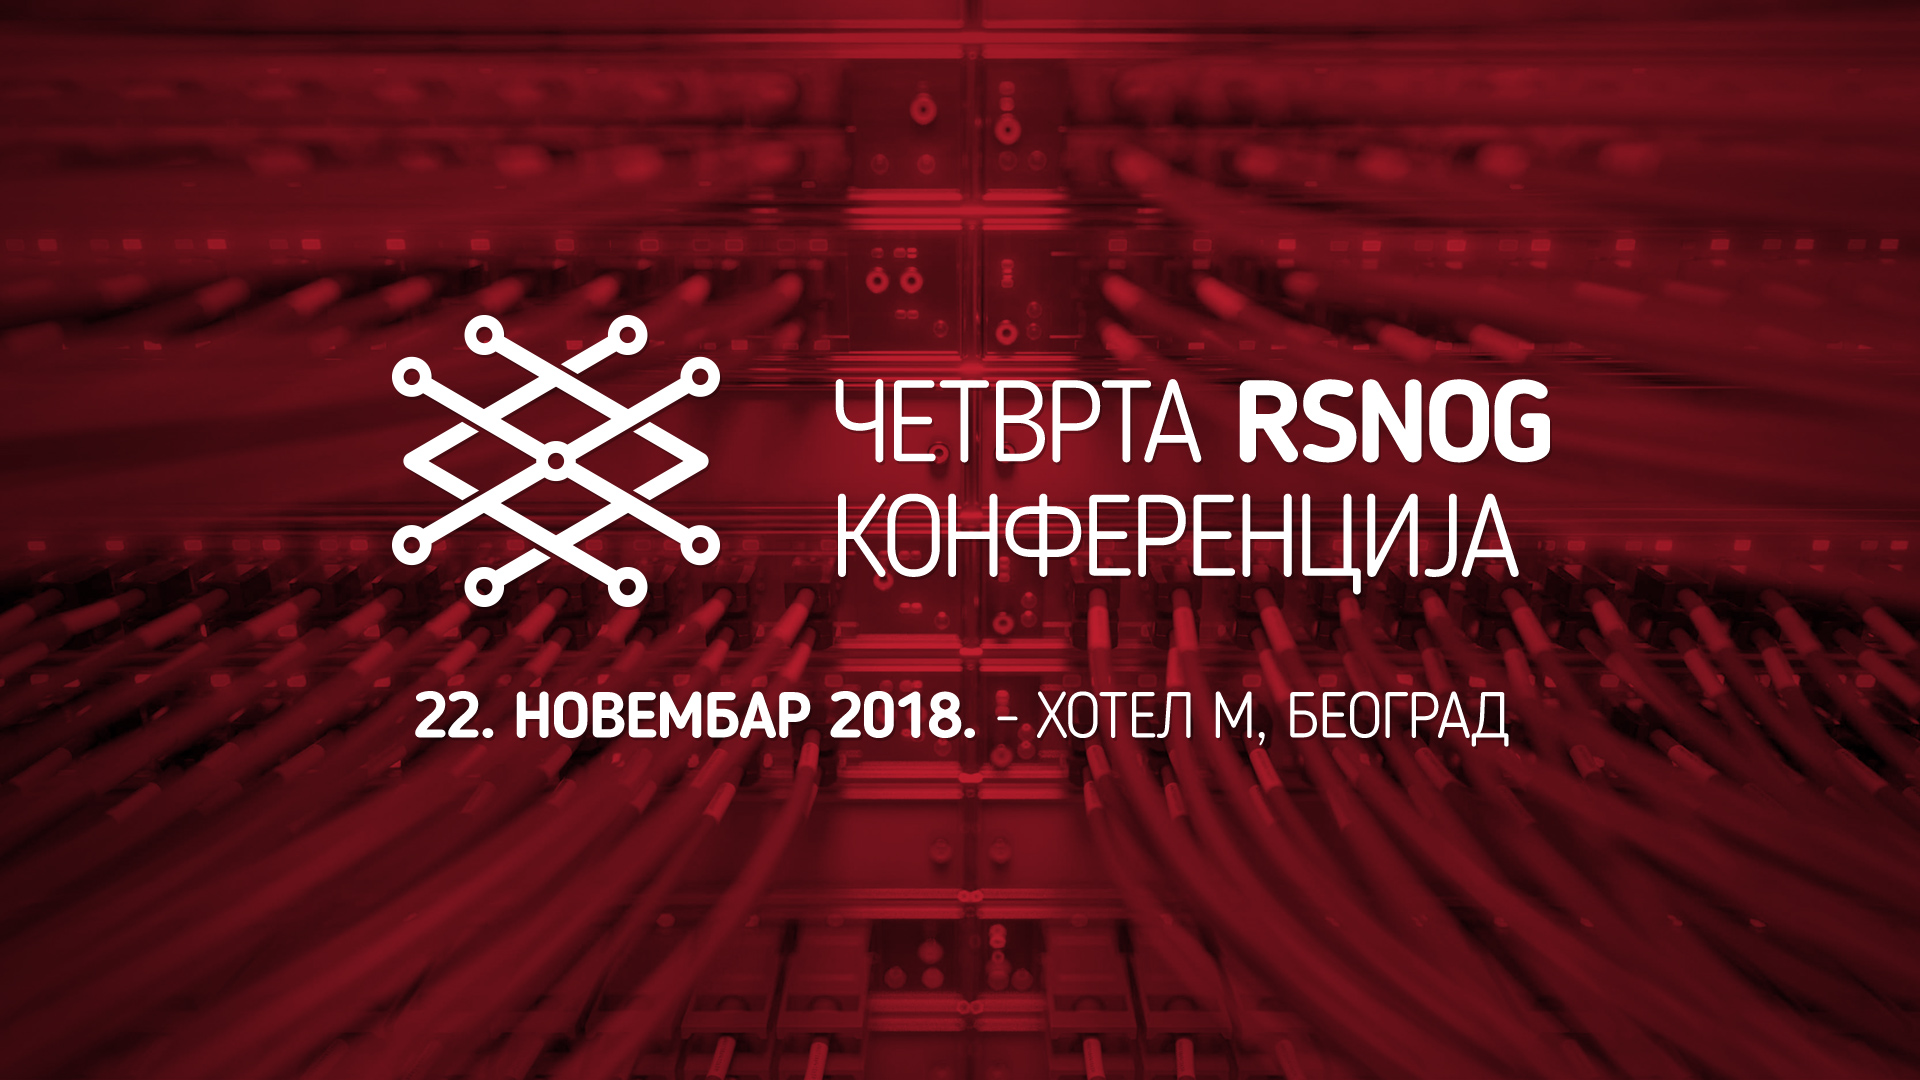 Отворена регистрација за Четврту RSNOG конференцију